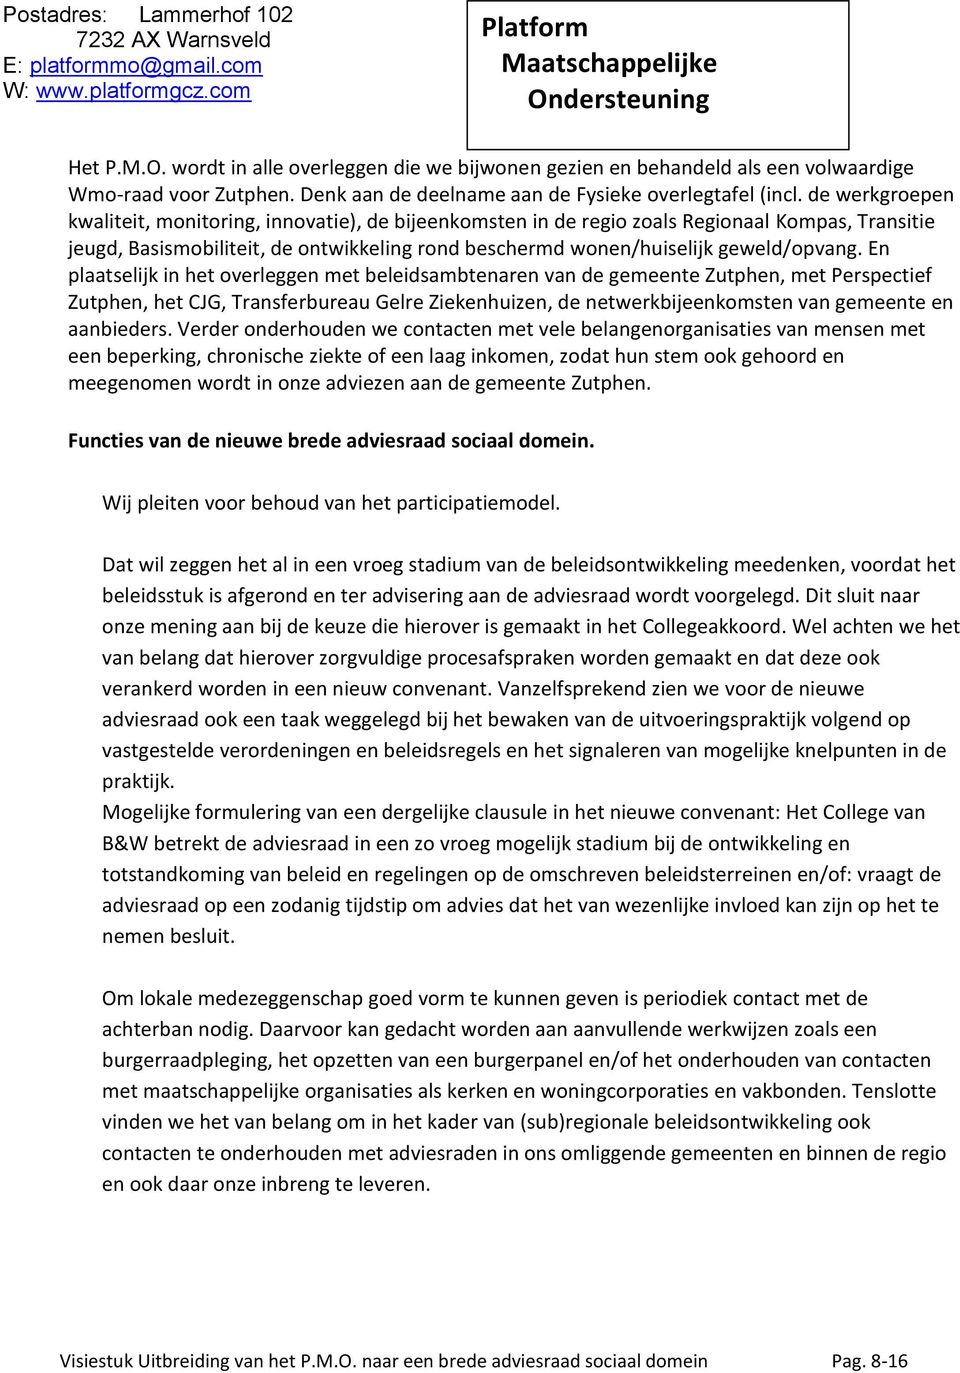 En plaatselijk in het overleggen met beleidsambtenaren van de gemeente Zutphen, met Perspectief Zutphen, het CJG, Transferbureau Gelre Ziekenhuizen, de netwerkbijeenkomsten van gemeente en aanbieders.